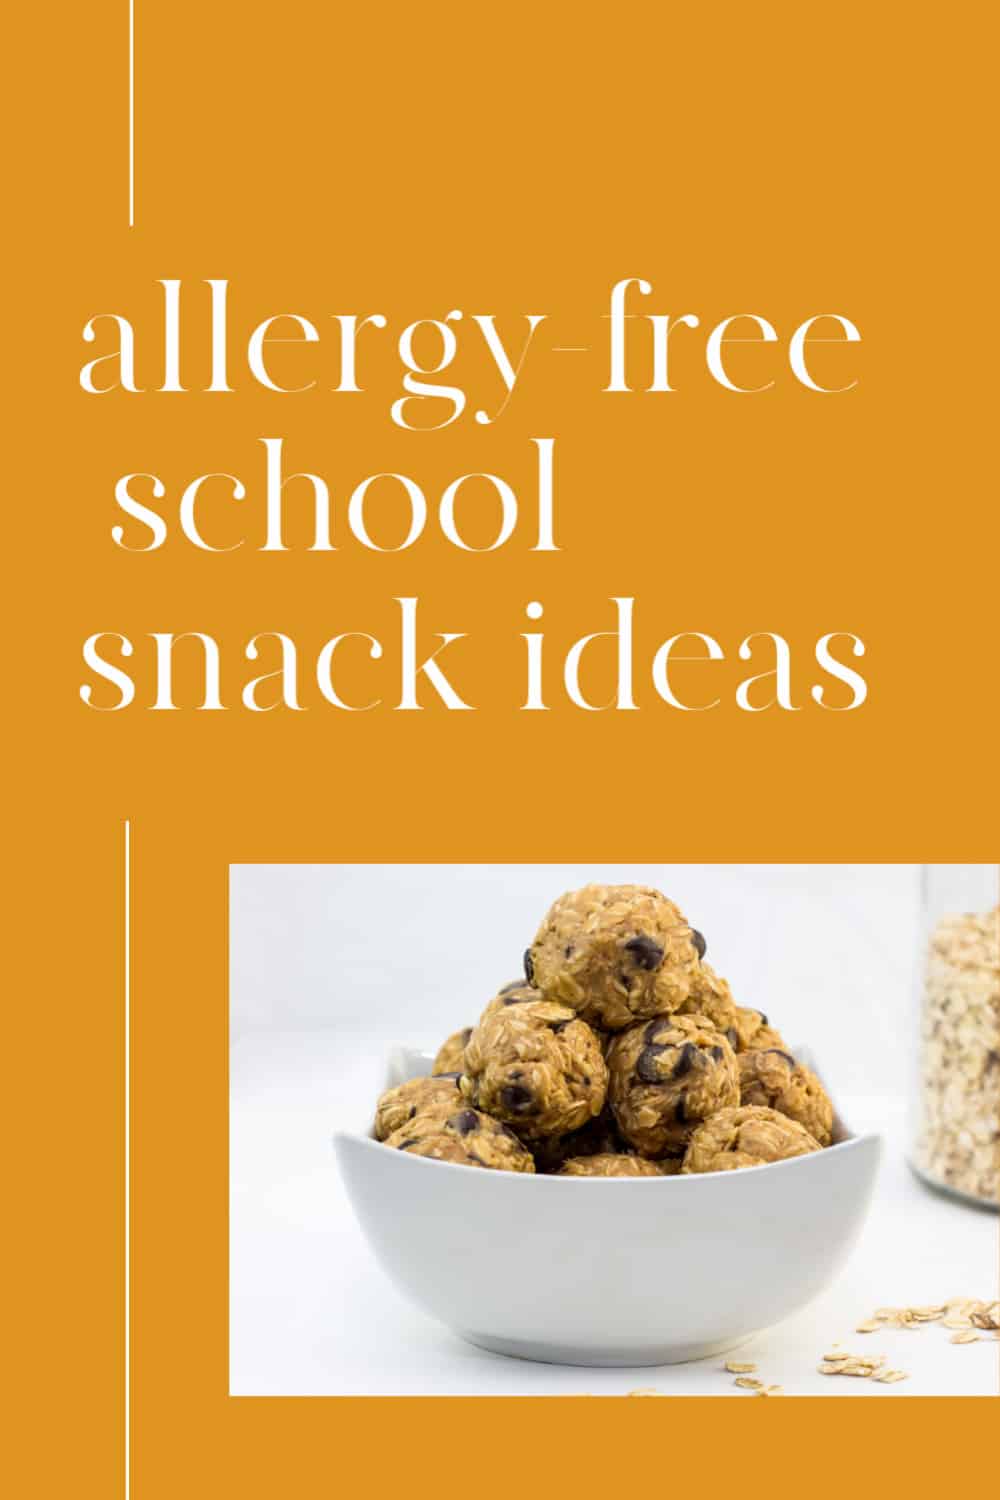 Peanut free school snacks